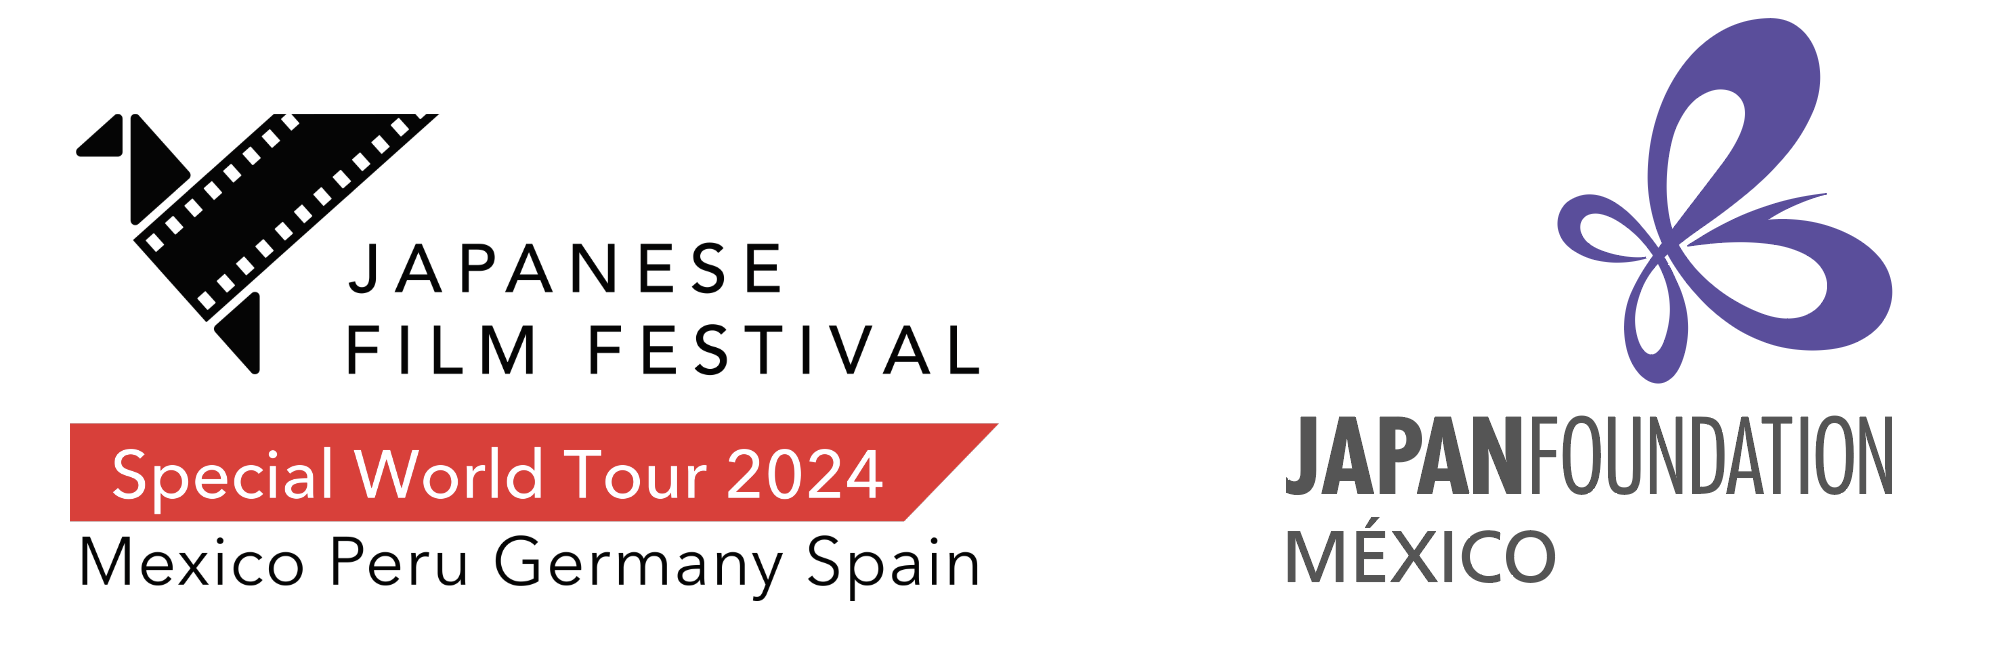 Japanese Film Festival en Cines 2024 Actividades Museo Amparo, Puebla